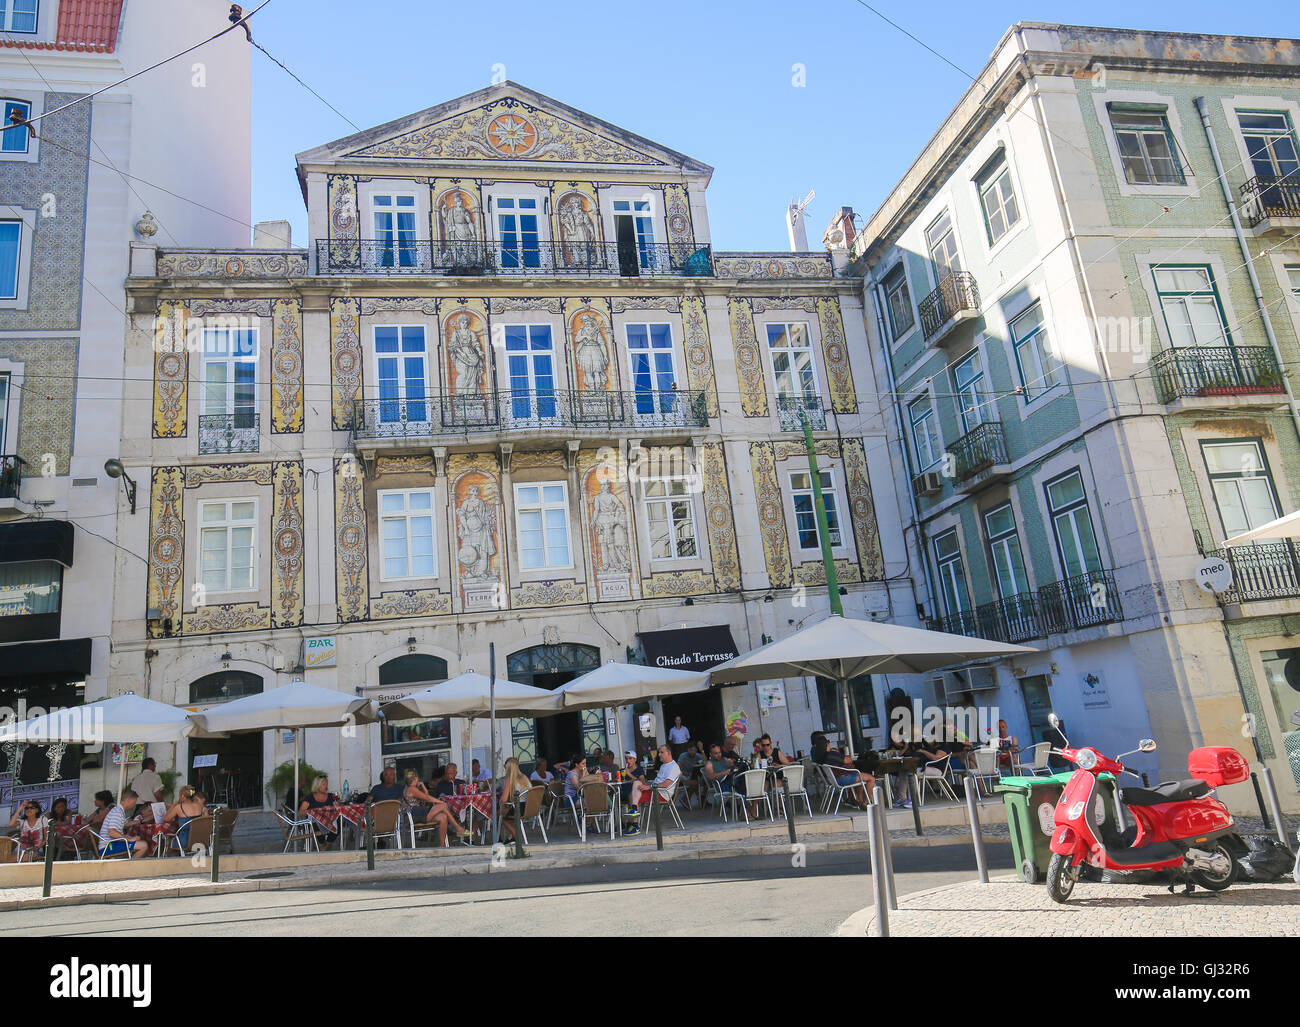 Lisbonne, Portugal - 13 juillet 2016 : une architecture typique et un bar dans le quartier de Bairro Alto, un quartier central de Lisbonne, Portugal Banque D'Images